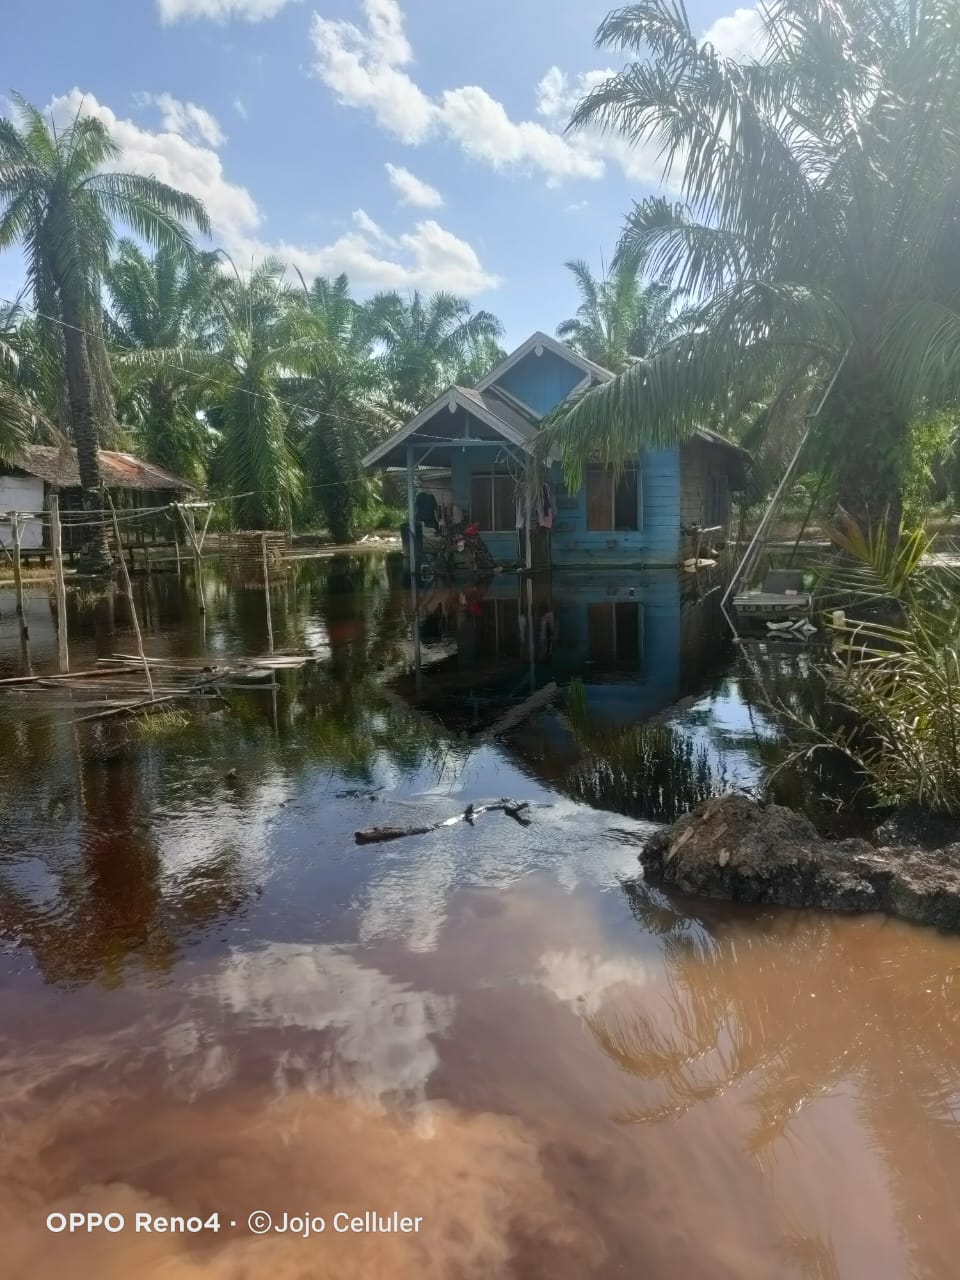 Akibat Curah Hujan Yang Akstrim Dua Desa di Banyuasin Terendam Banjir, # Masyarakat Berharap Normalisasi Sungai